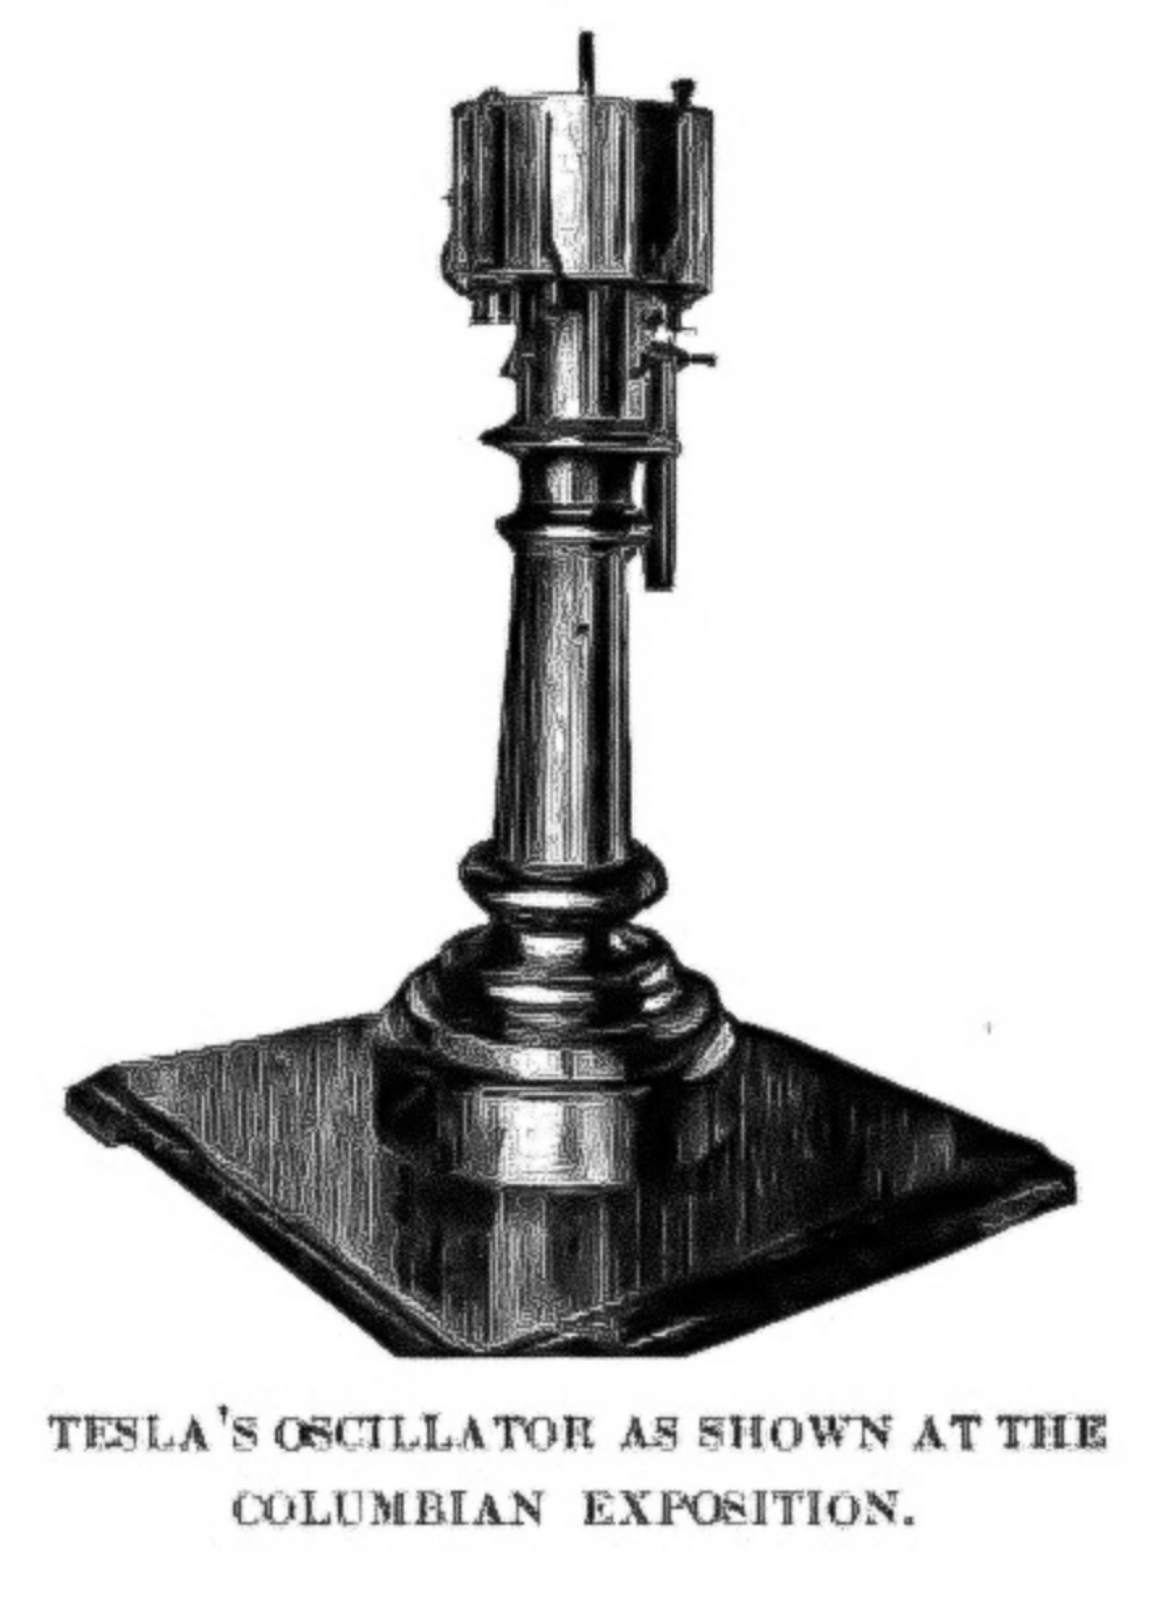 Teslas elektromechanischer Oszillator, ein dampfbetriebener elektrischer Generator, der 1893 von Nikola Tesla patentiert wurde.